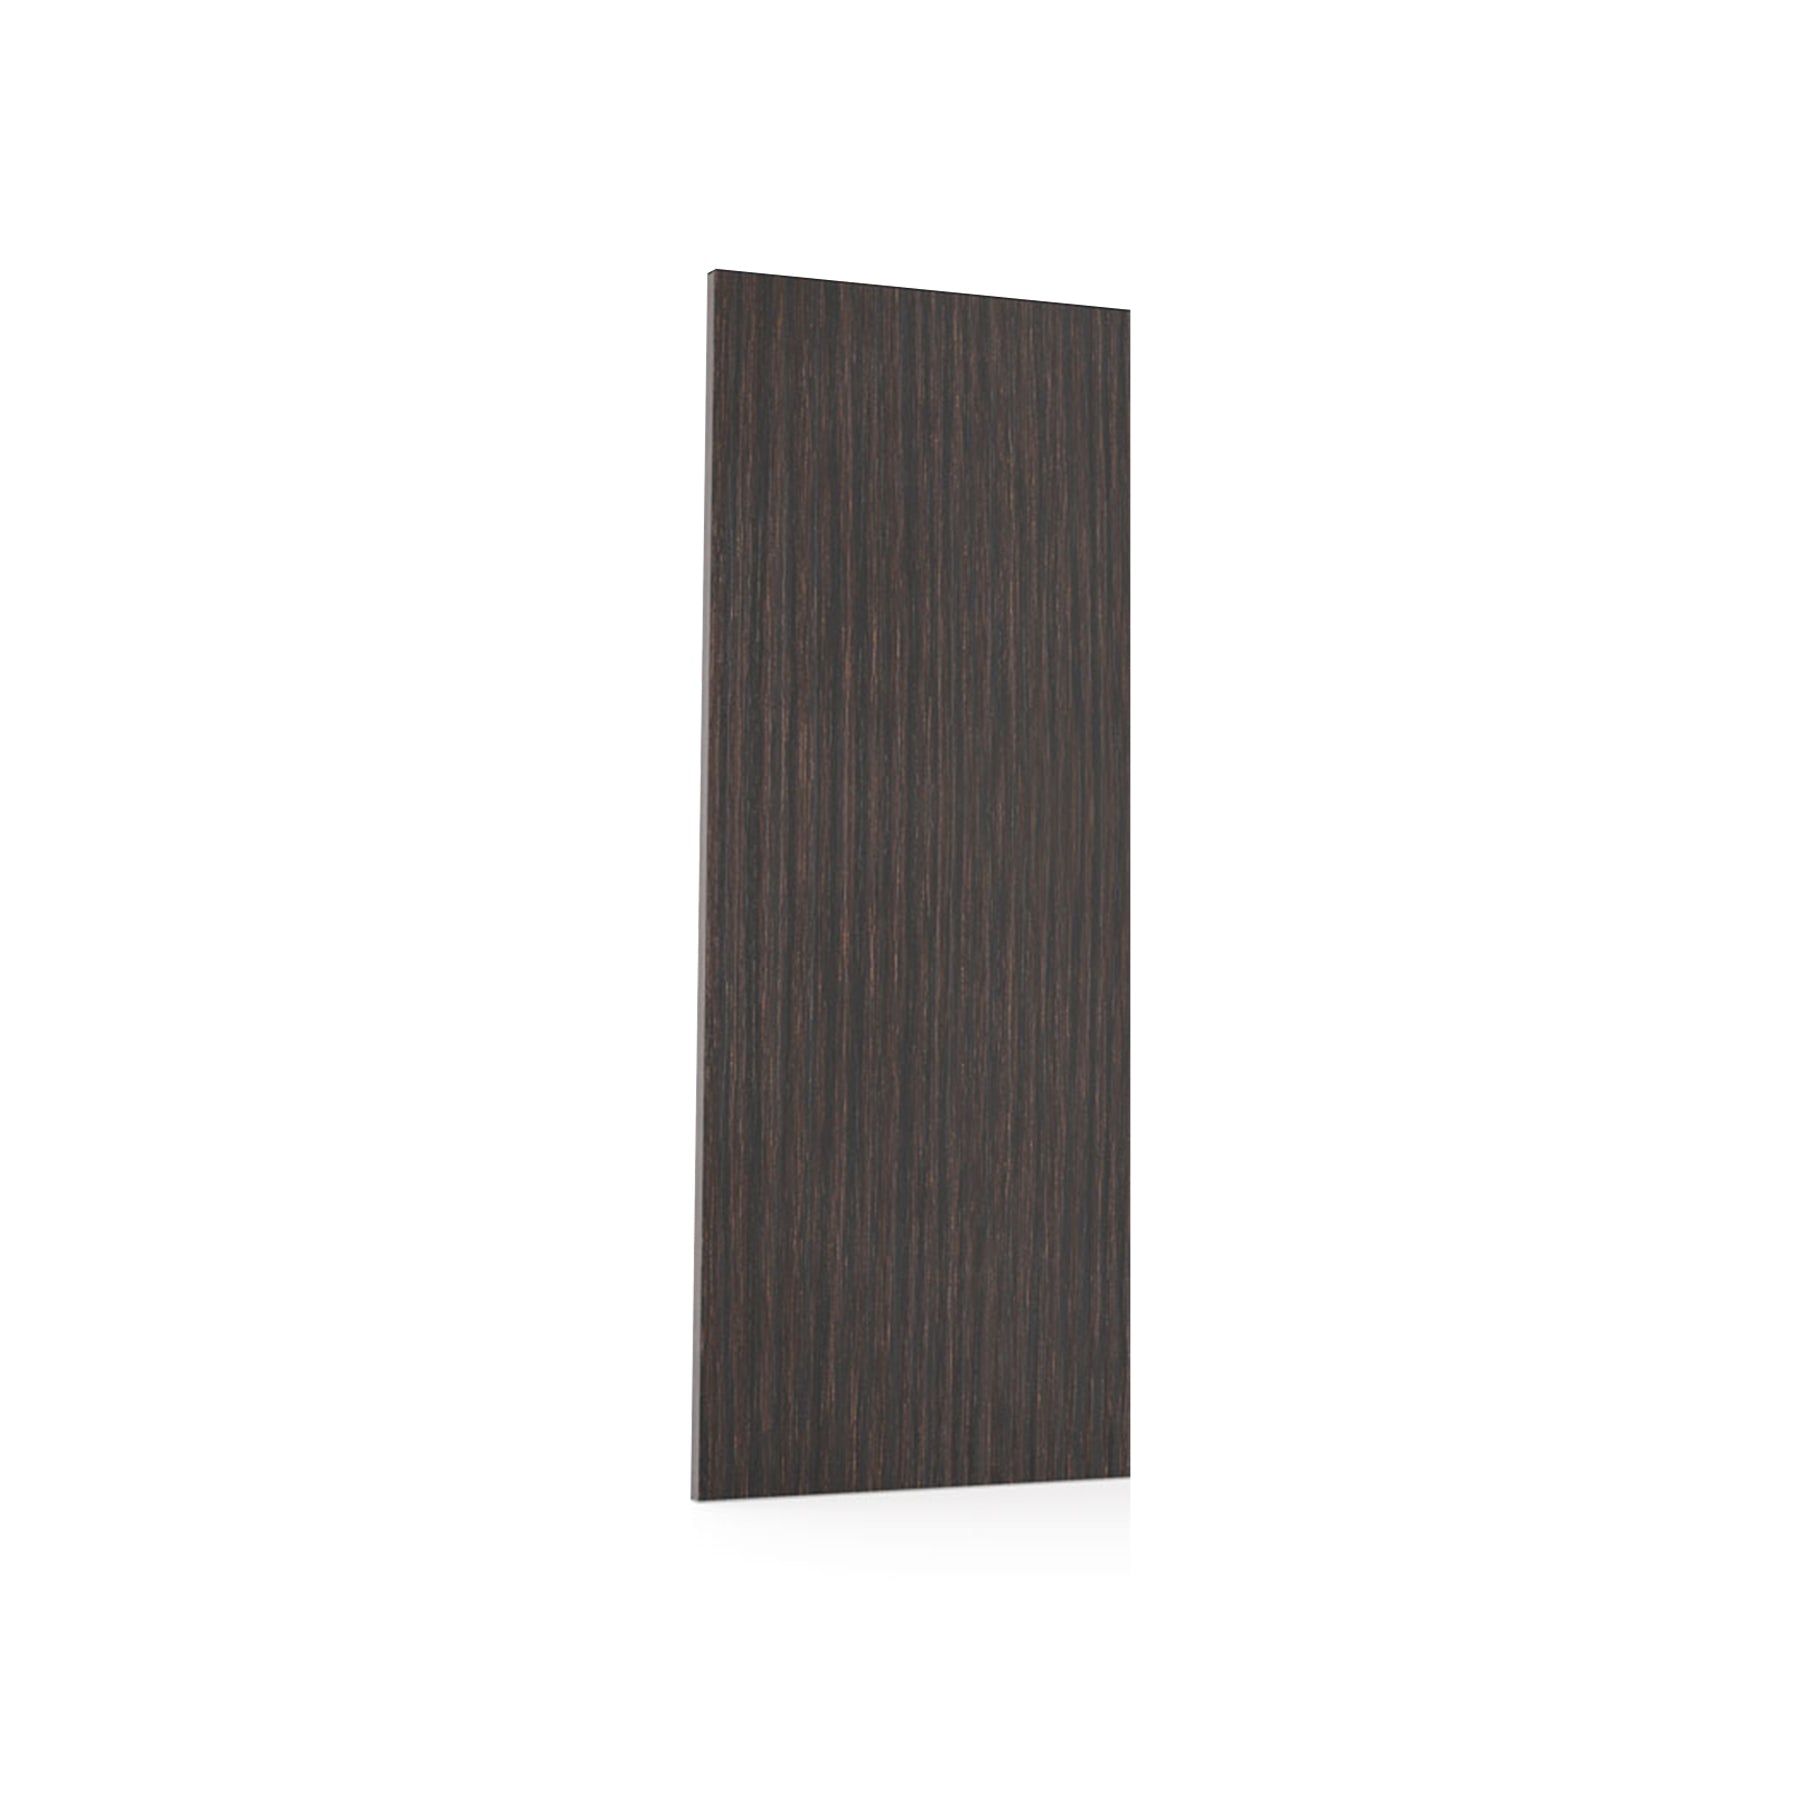 RTA - Brown Oak - Wall End Panels | 0.6"W x 42"H x 12"D